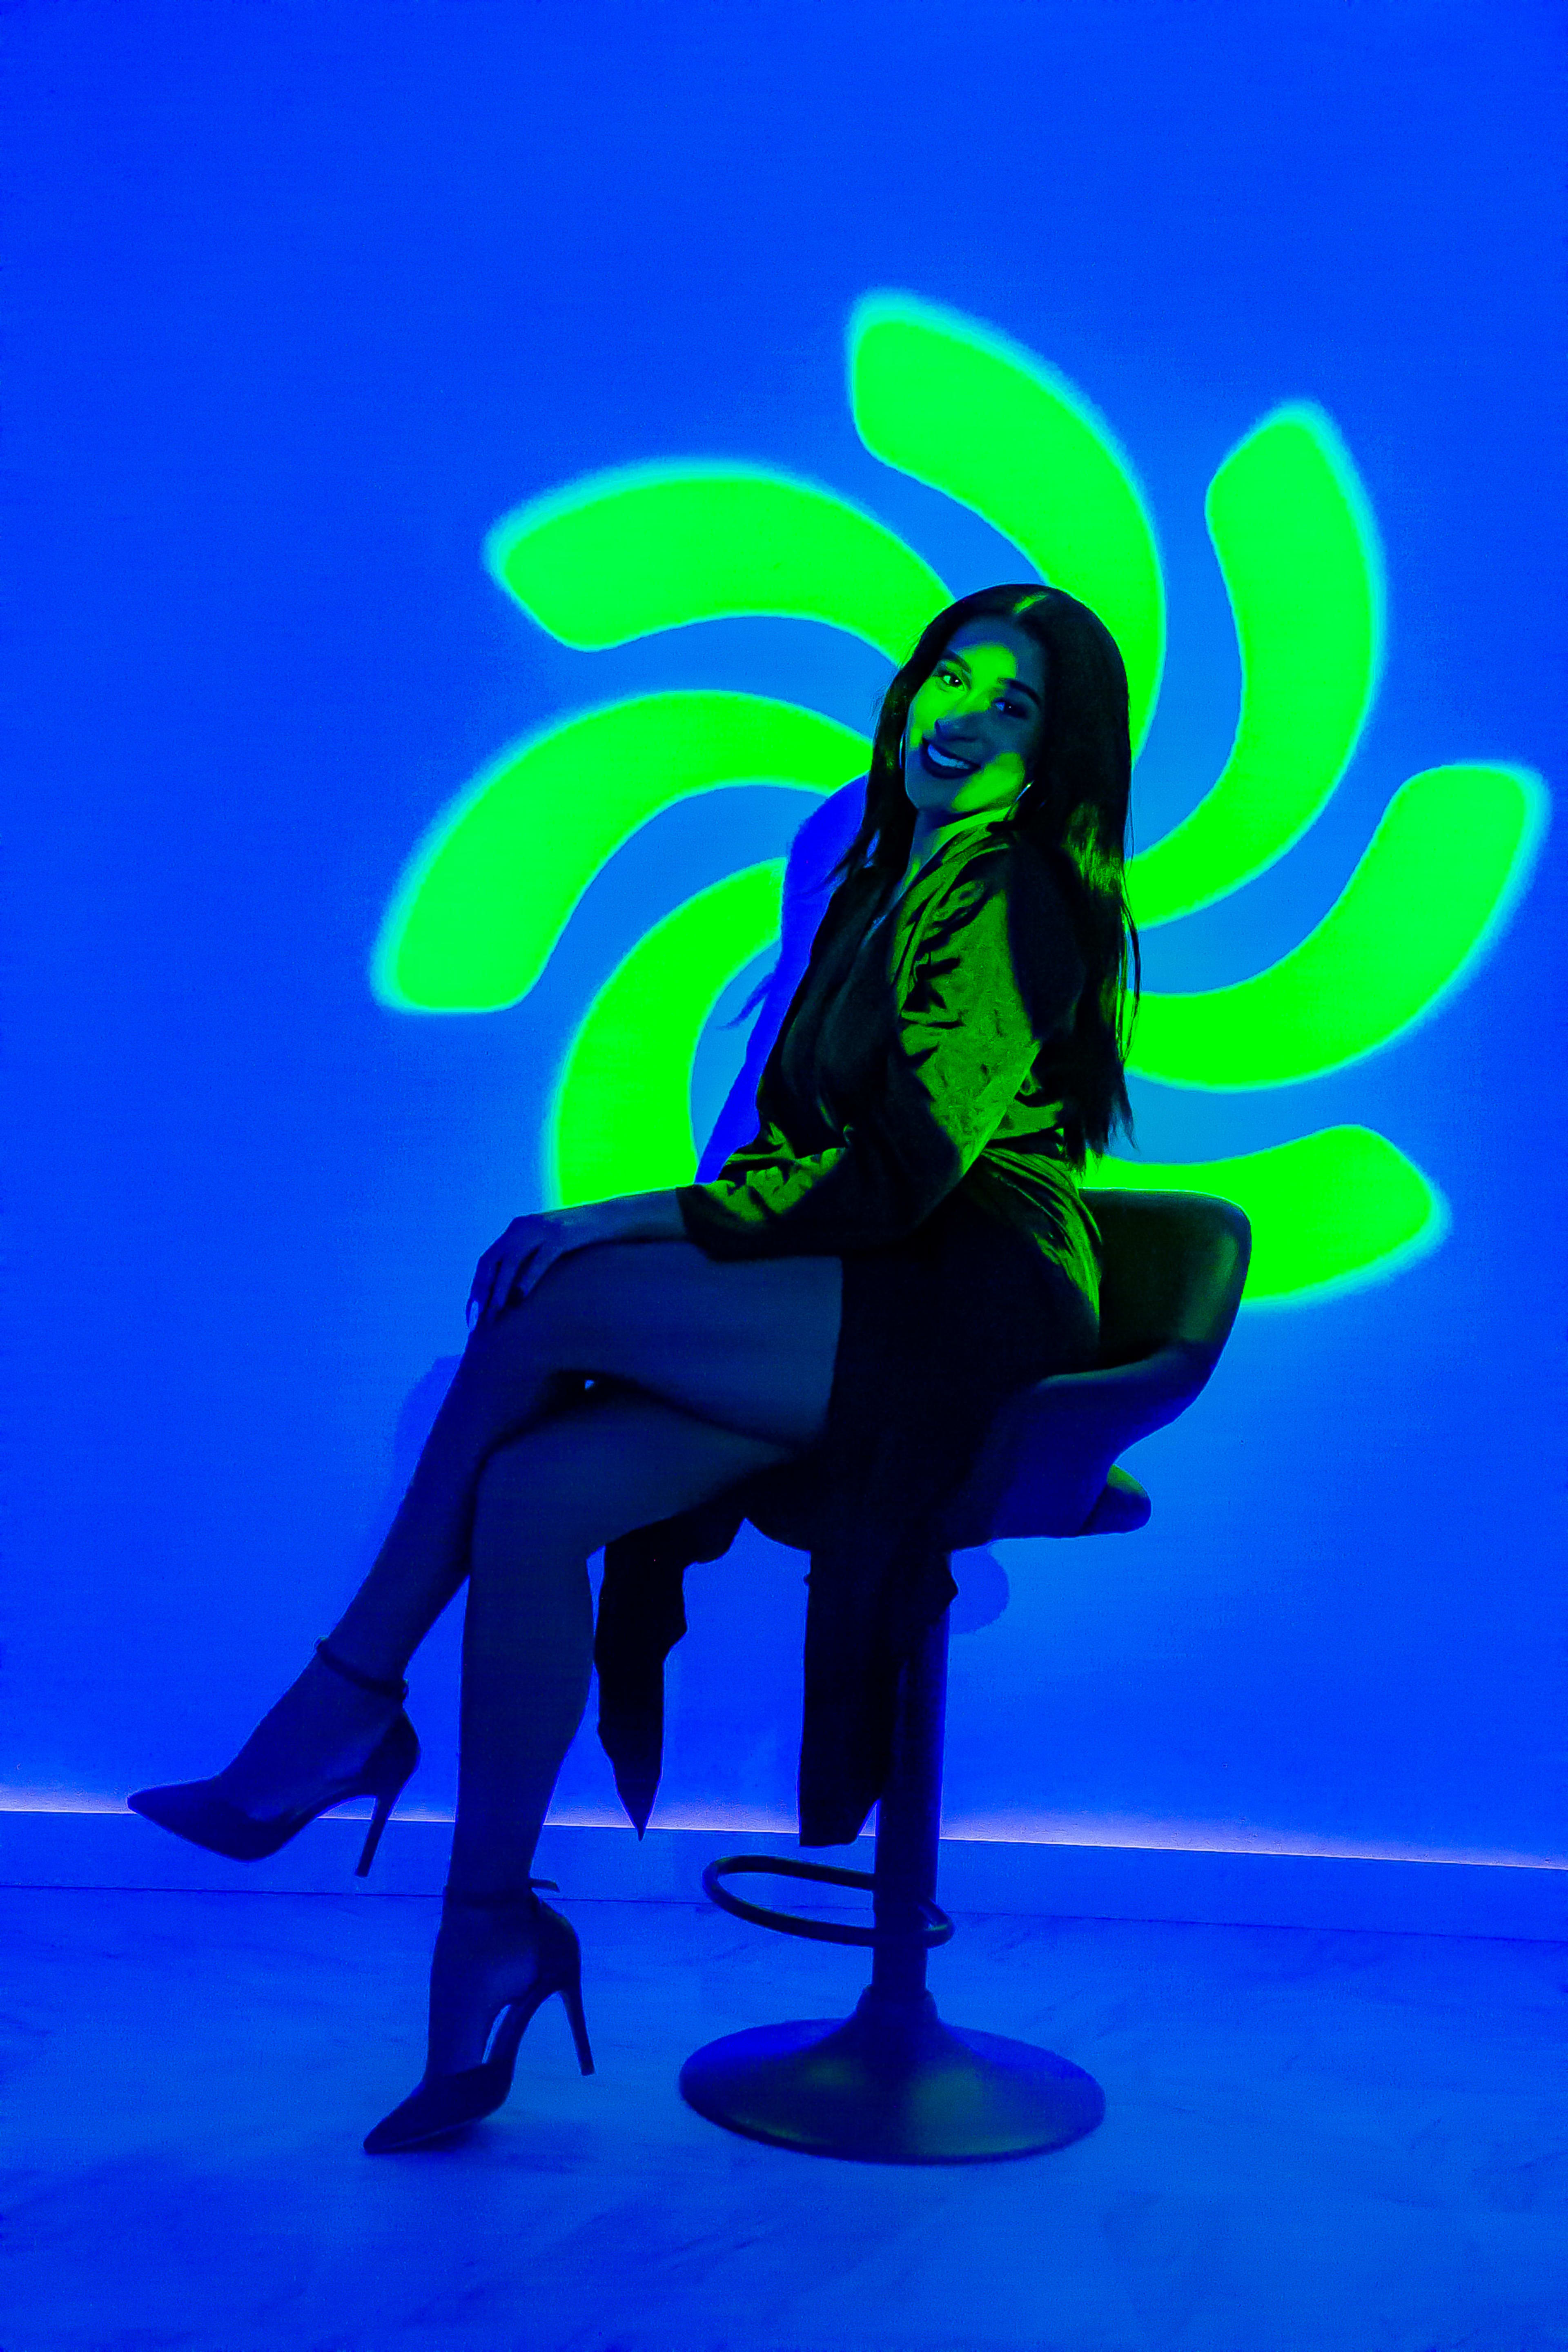 Ein Mode-Fotoshooting einer Frau auf einem Stuhl vor einer neonblauen Wand.